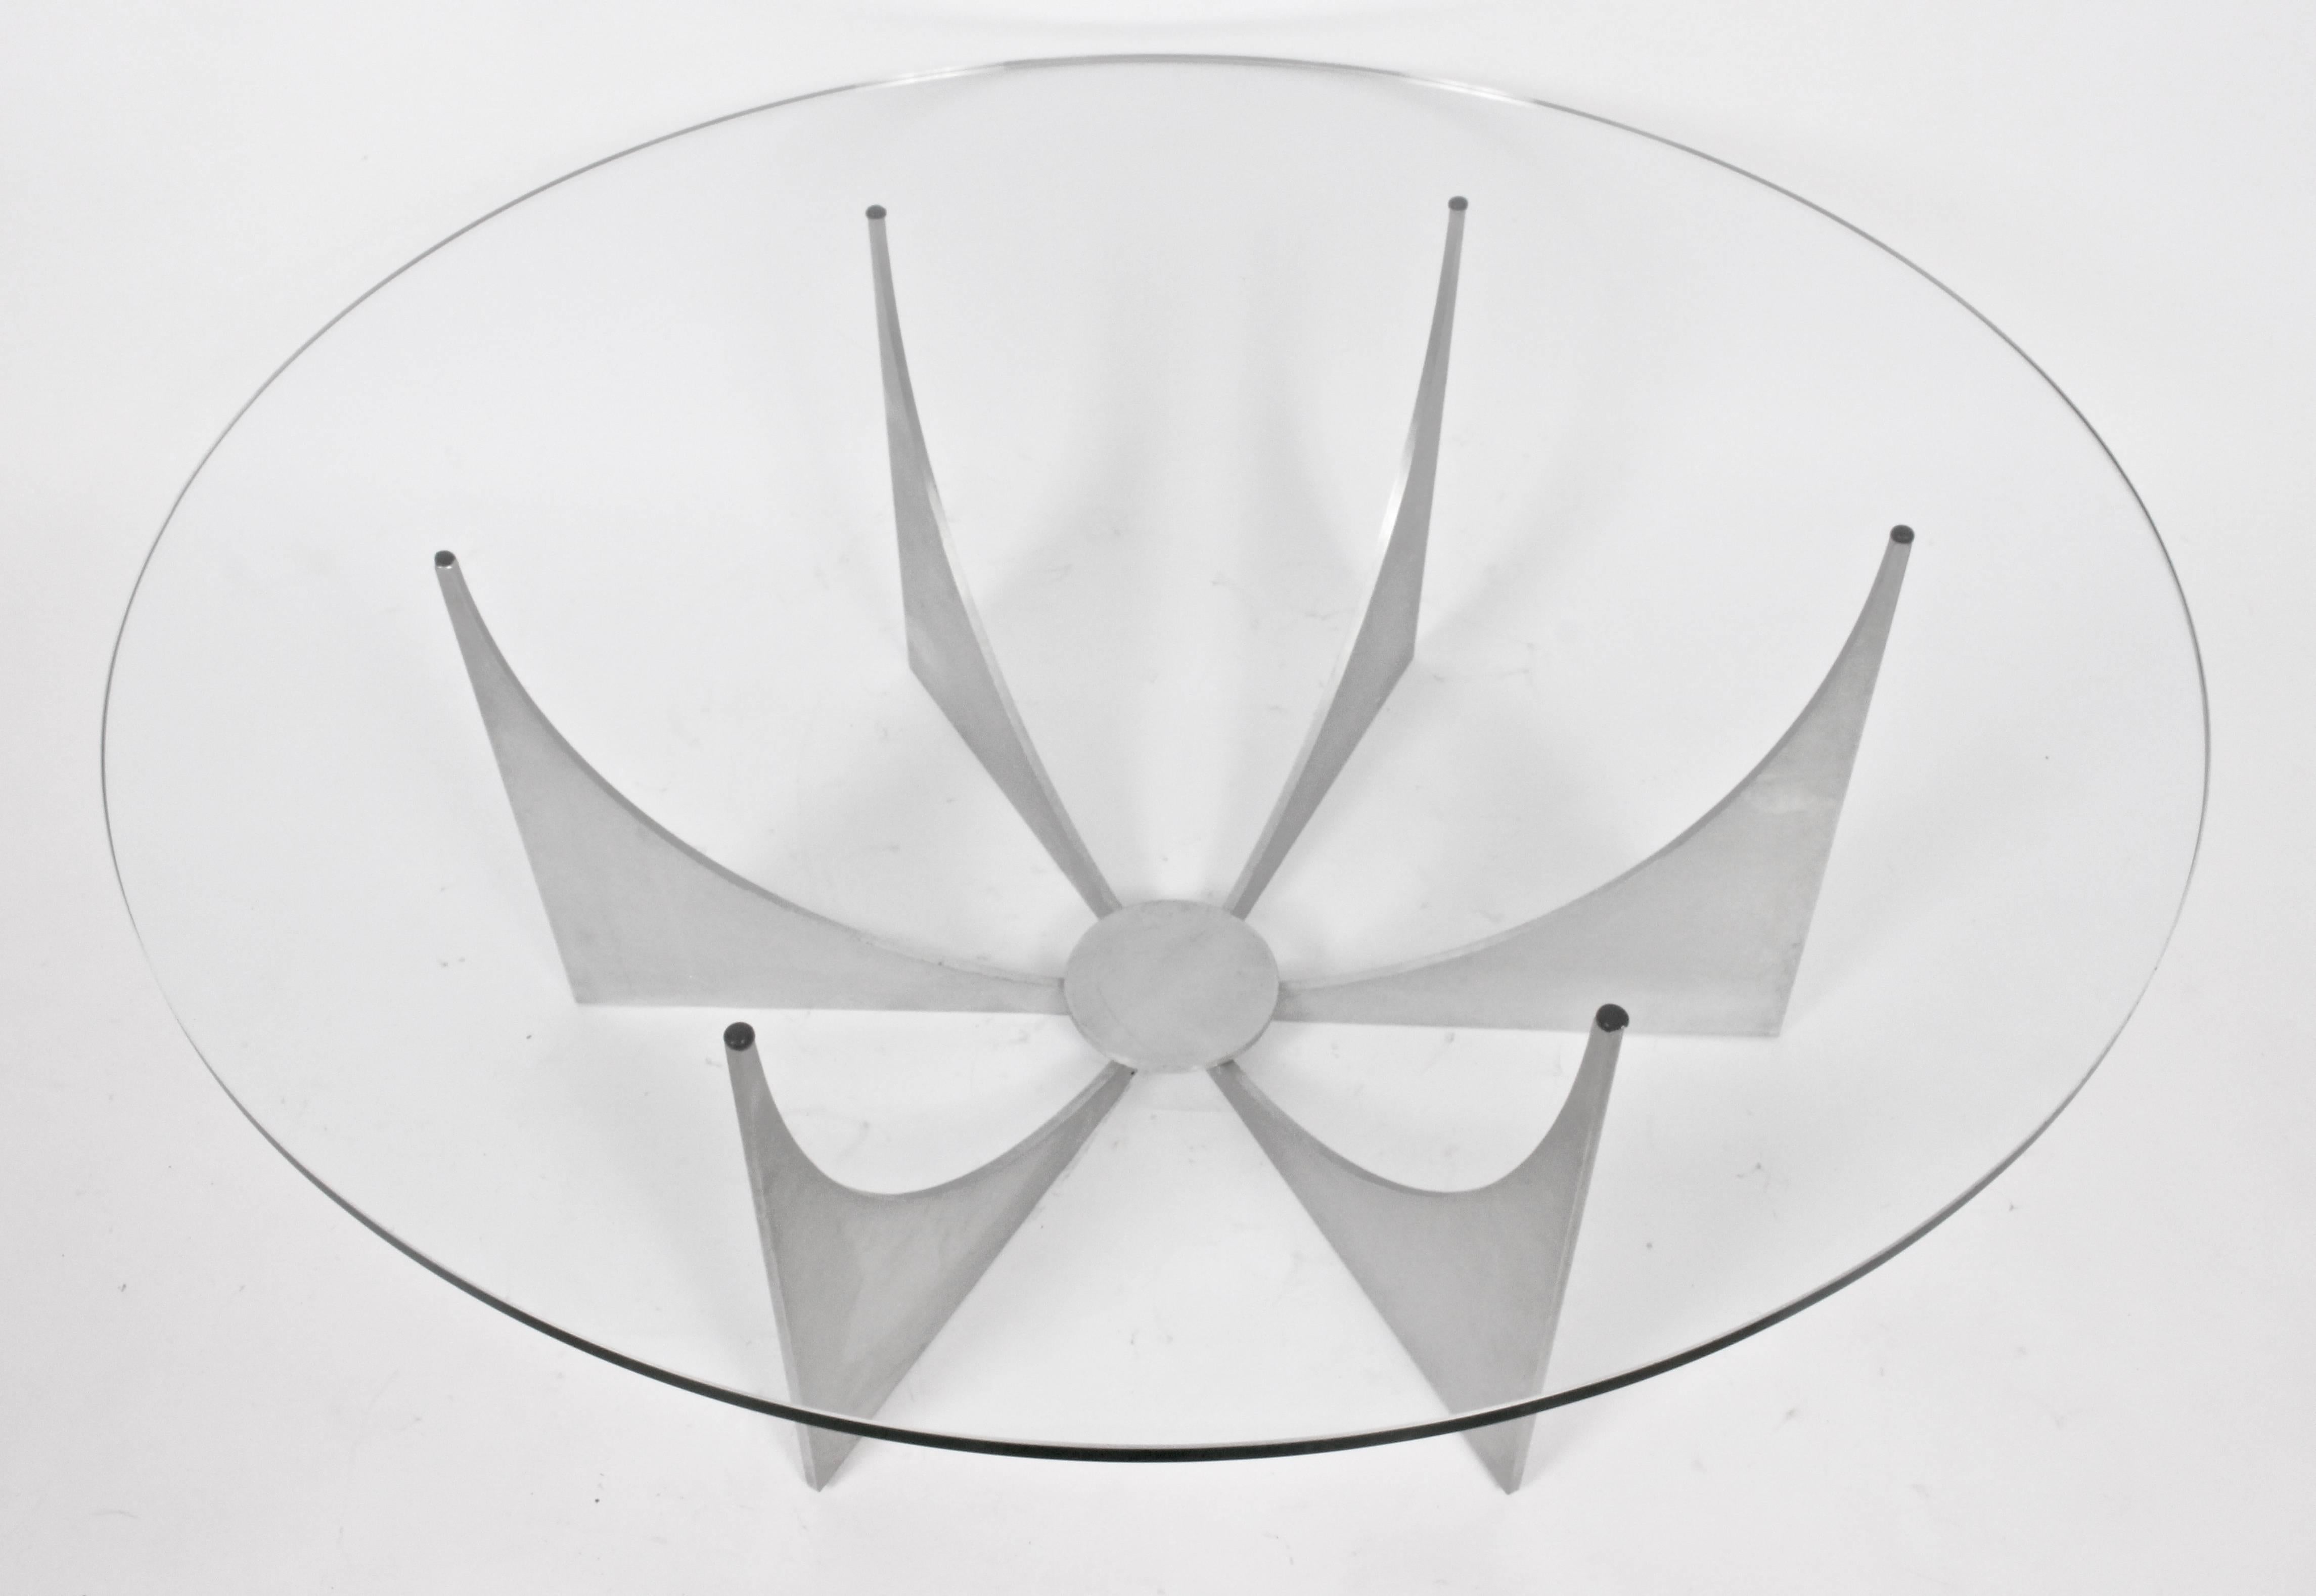 Donald CIRCA Table à cocktail ronde minimaliste en fonte d'aluminium et verre, circa 1970. Classique. Grand. Moderniste. Géométrique. 2 pièces. Base 15H x 30,5W. Le verre mesure .5D x 42W.  Veuillez noter que la base peut être expédiée par service